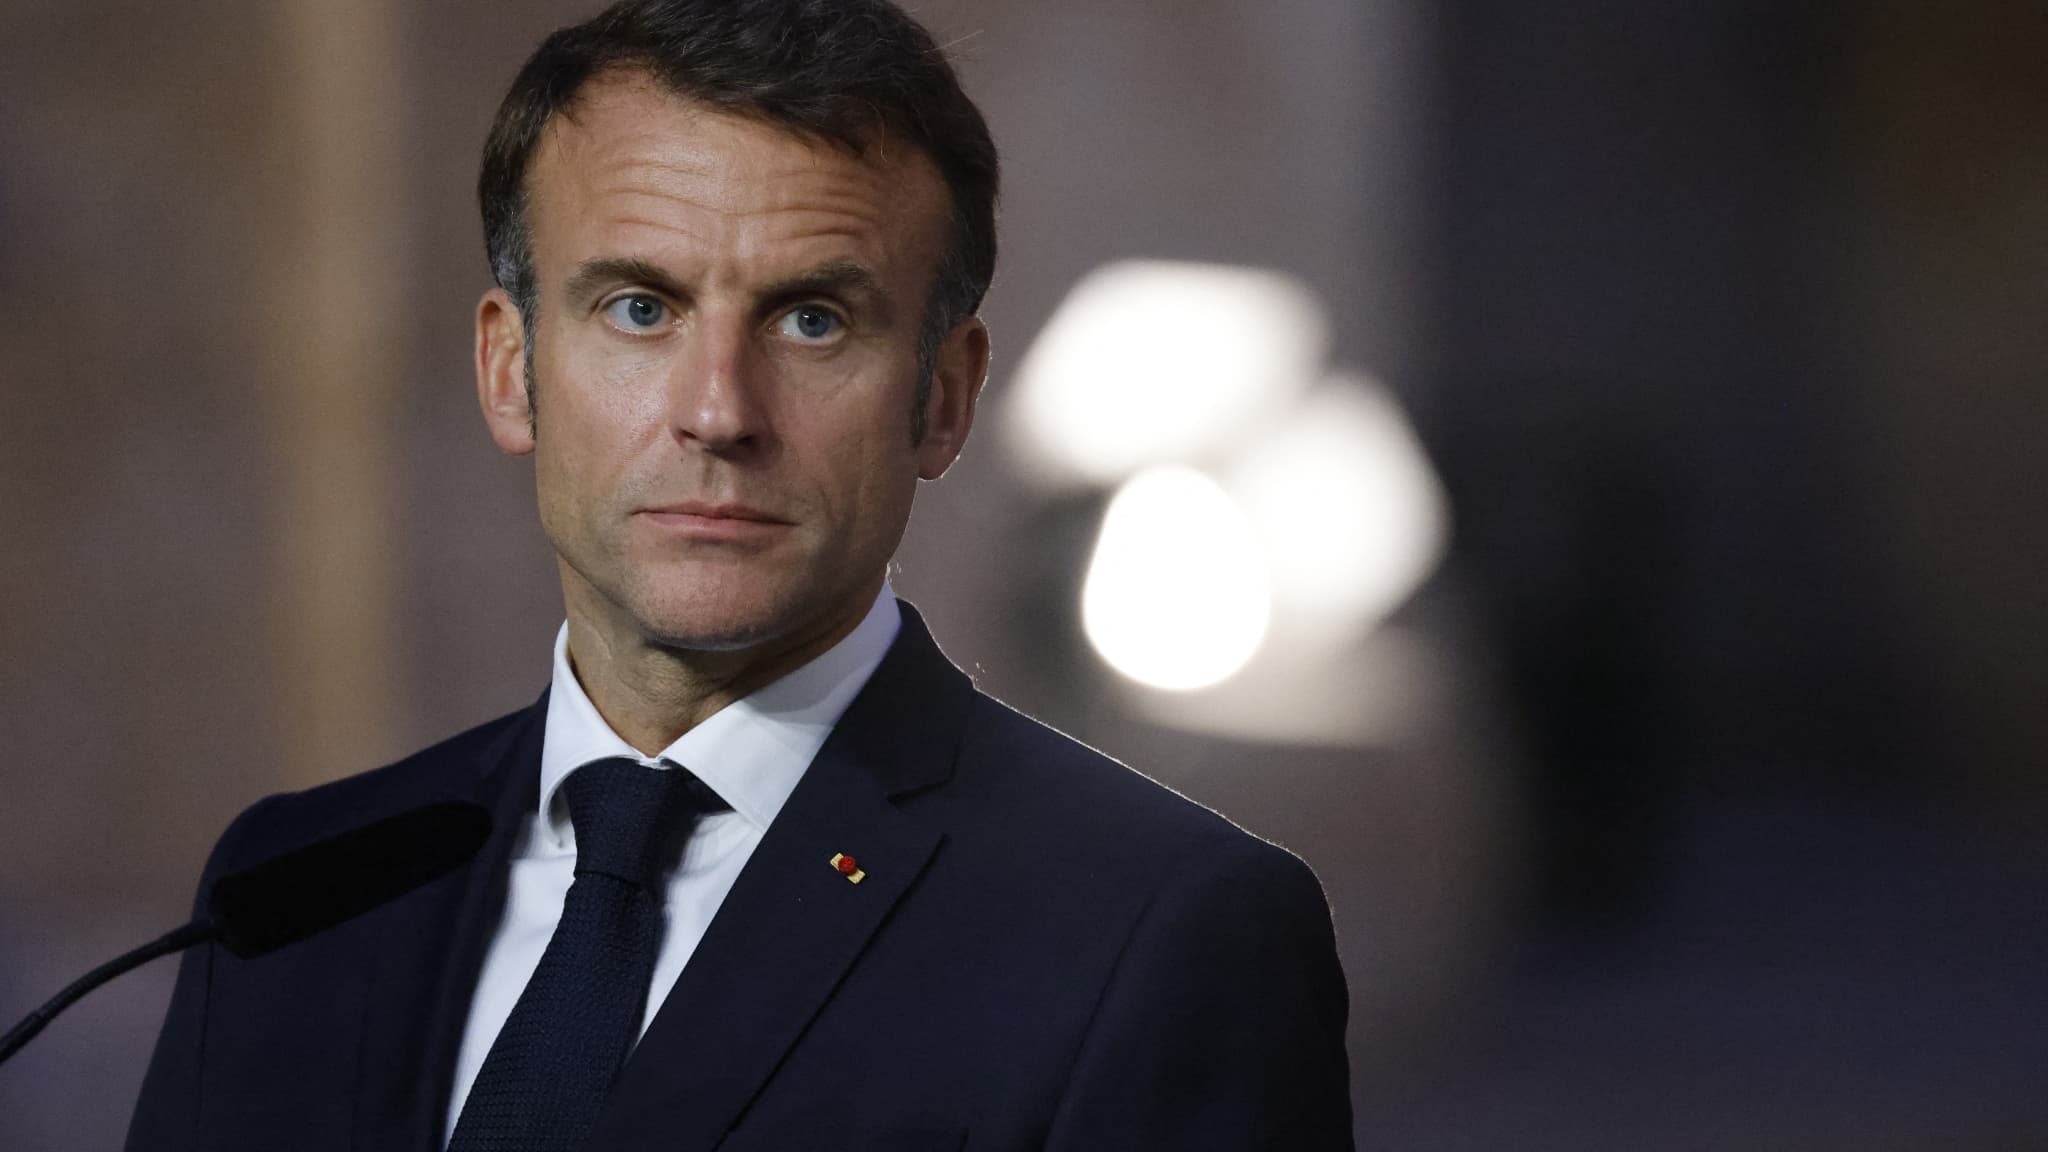 Emmanuel Macron zapowiedział, że przedstawi projekt ustawy mający na celu włączenie aborcji do konstytucji